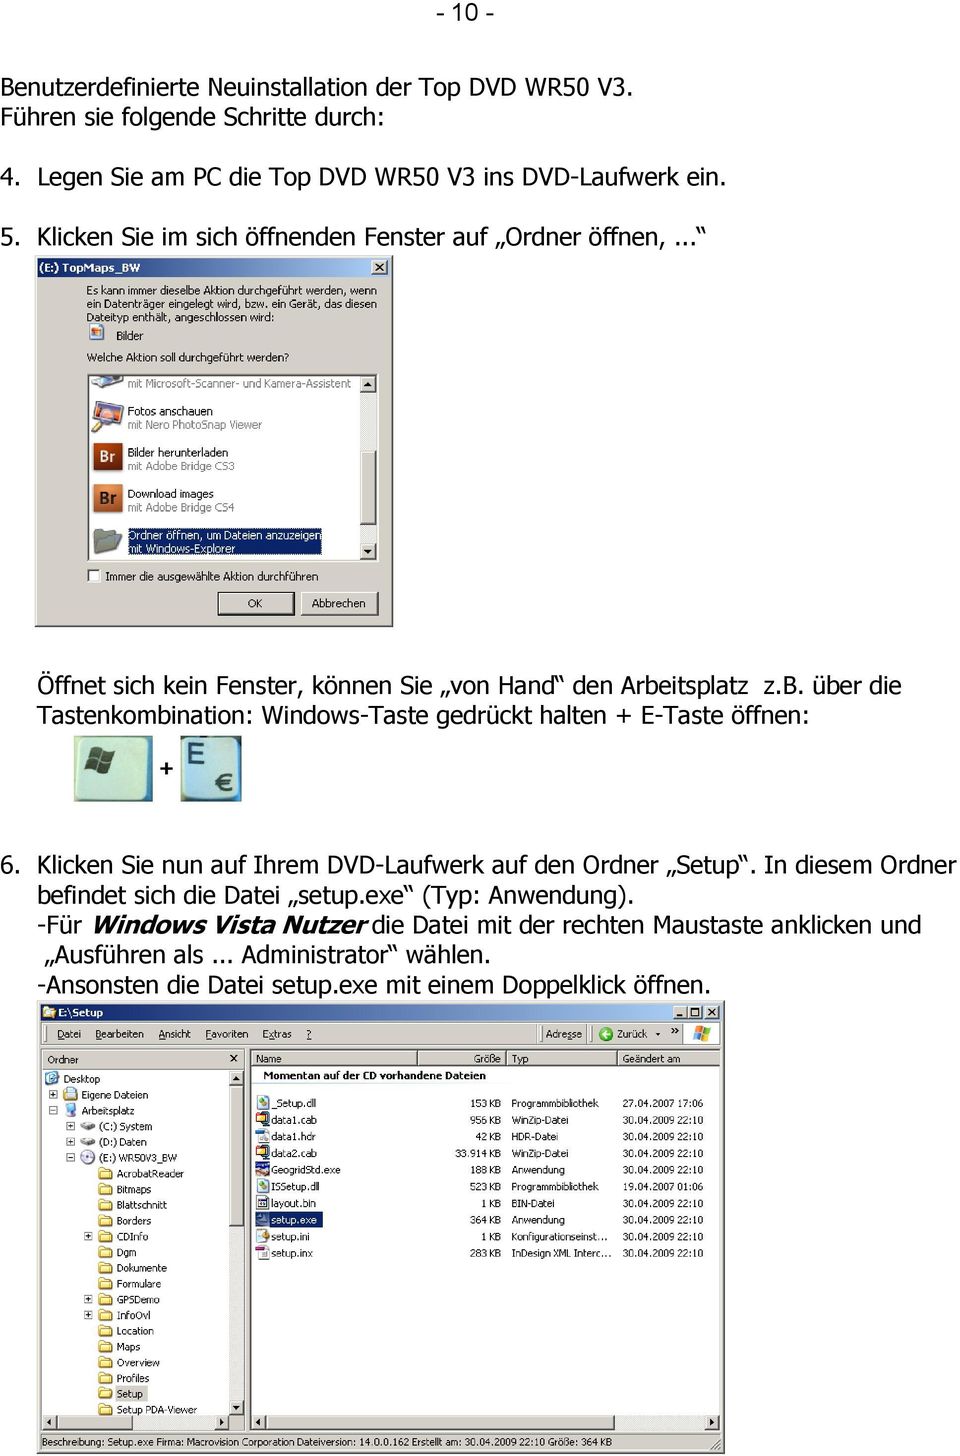 itsplatz z.b. über die Tastenkombination: Windows-Taste gedrückt halten + E-Taste öffnen: 6. Klicken Sie nun auf Ihrem DVD-Laufwerk auf den Ordner Setup.